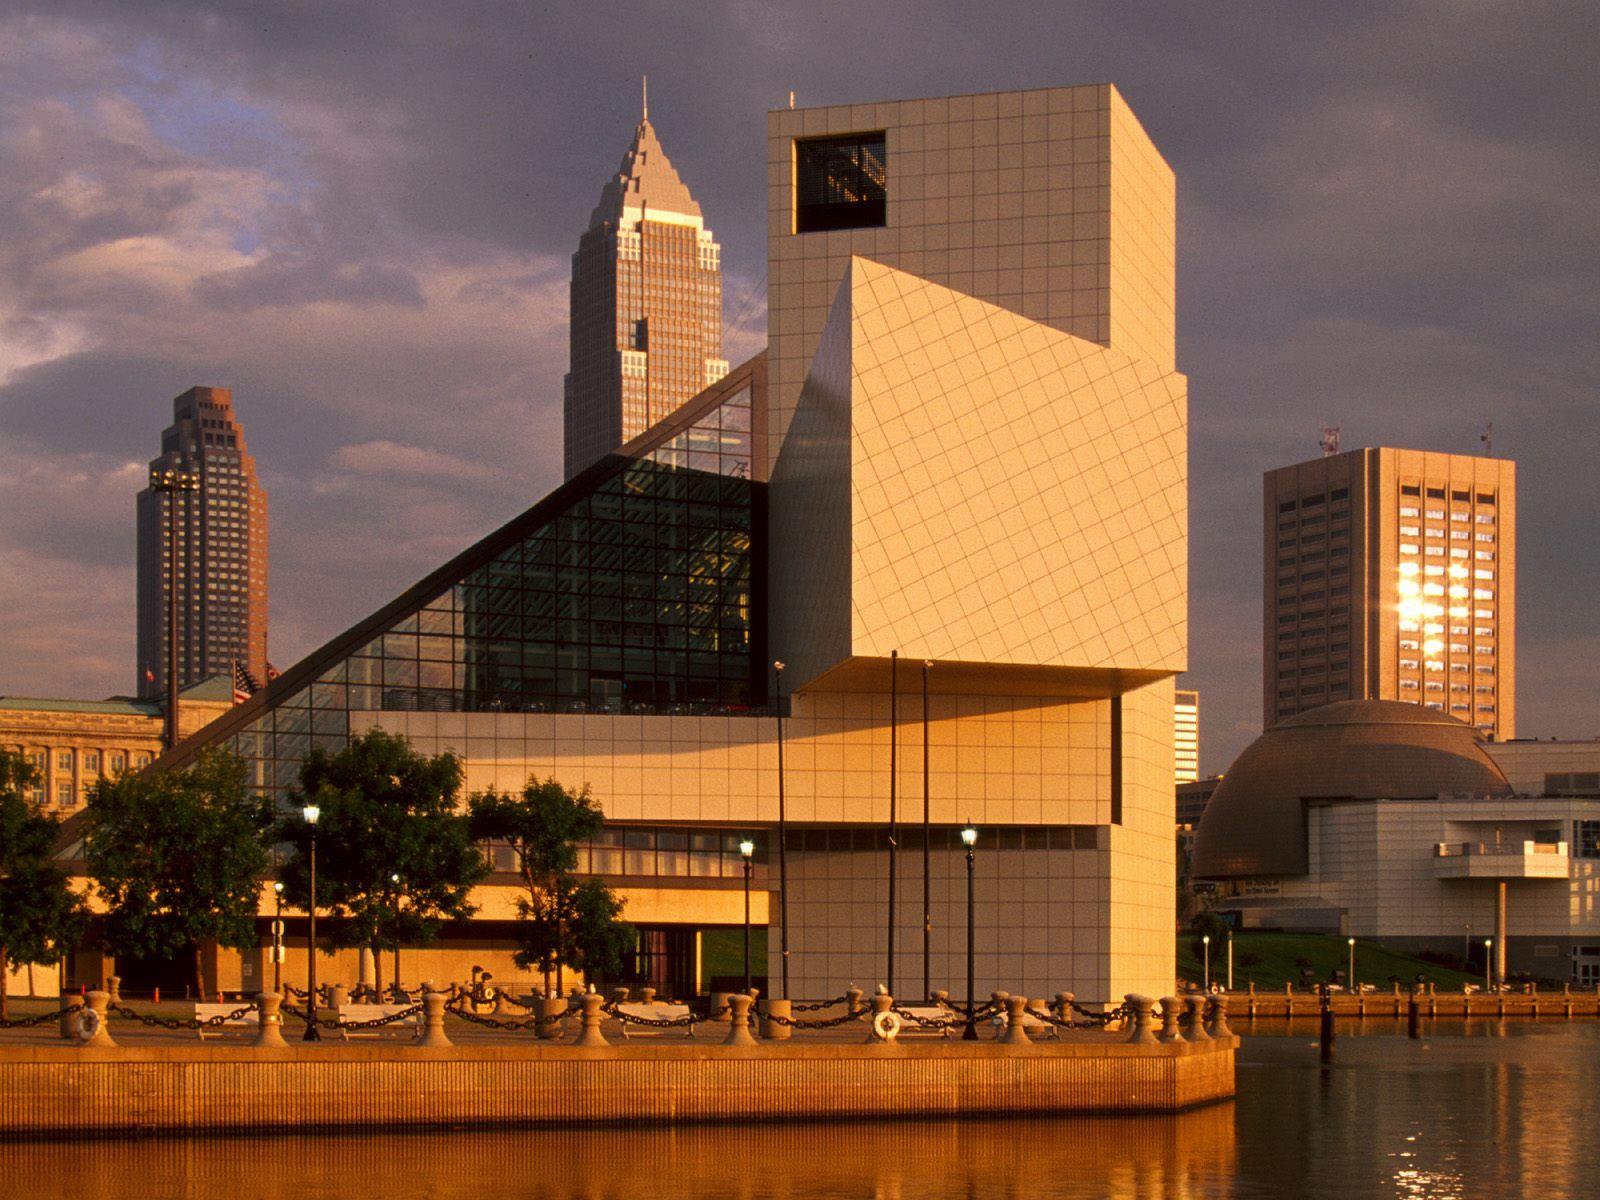 Rock and Roll Hall of Fame. #Clevelandhomegirl